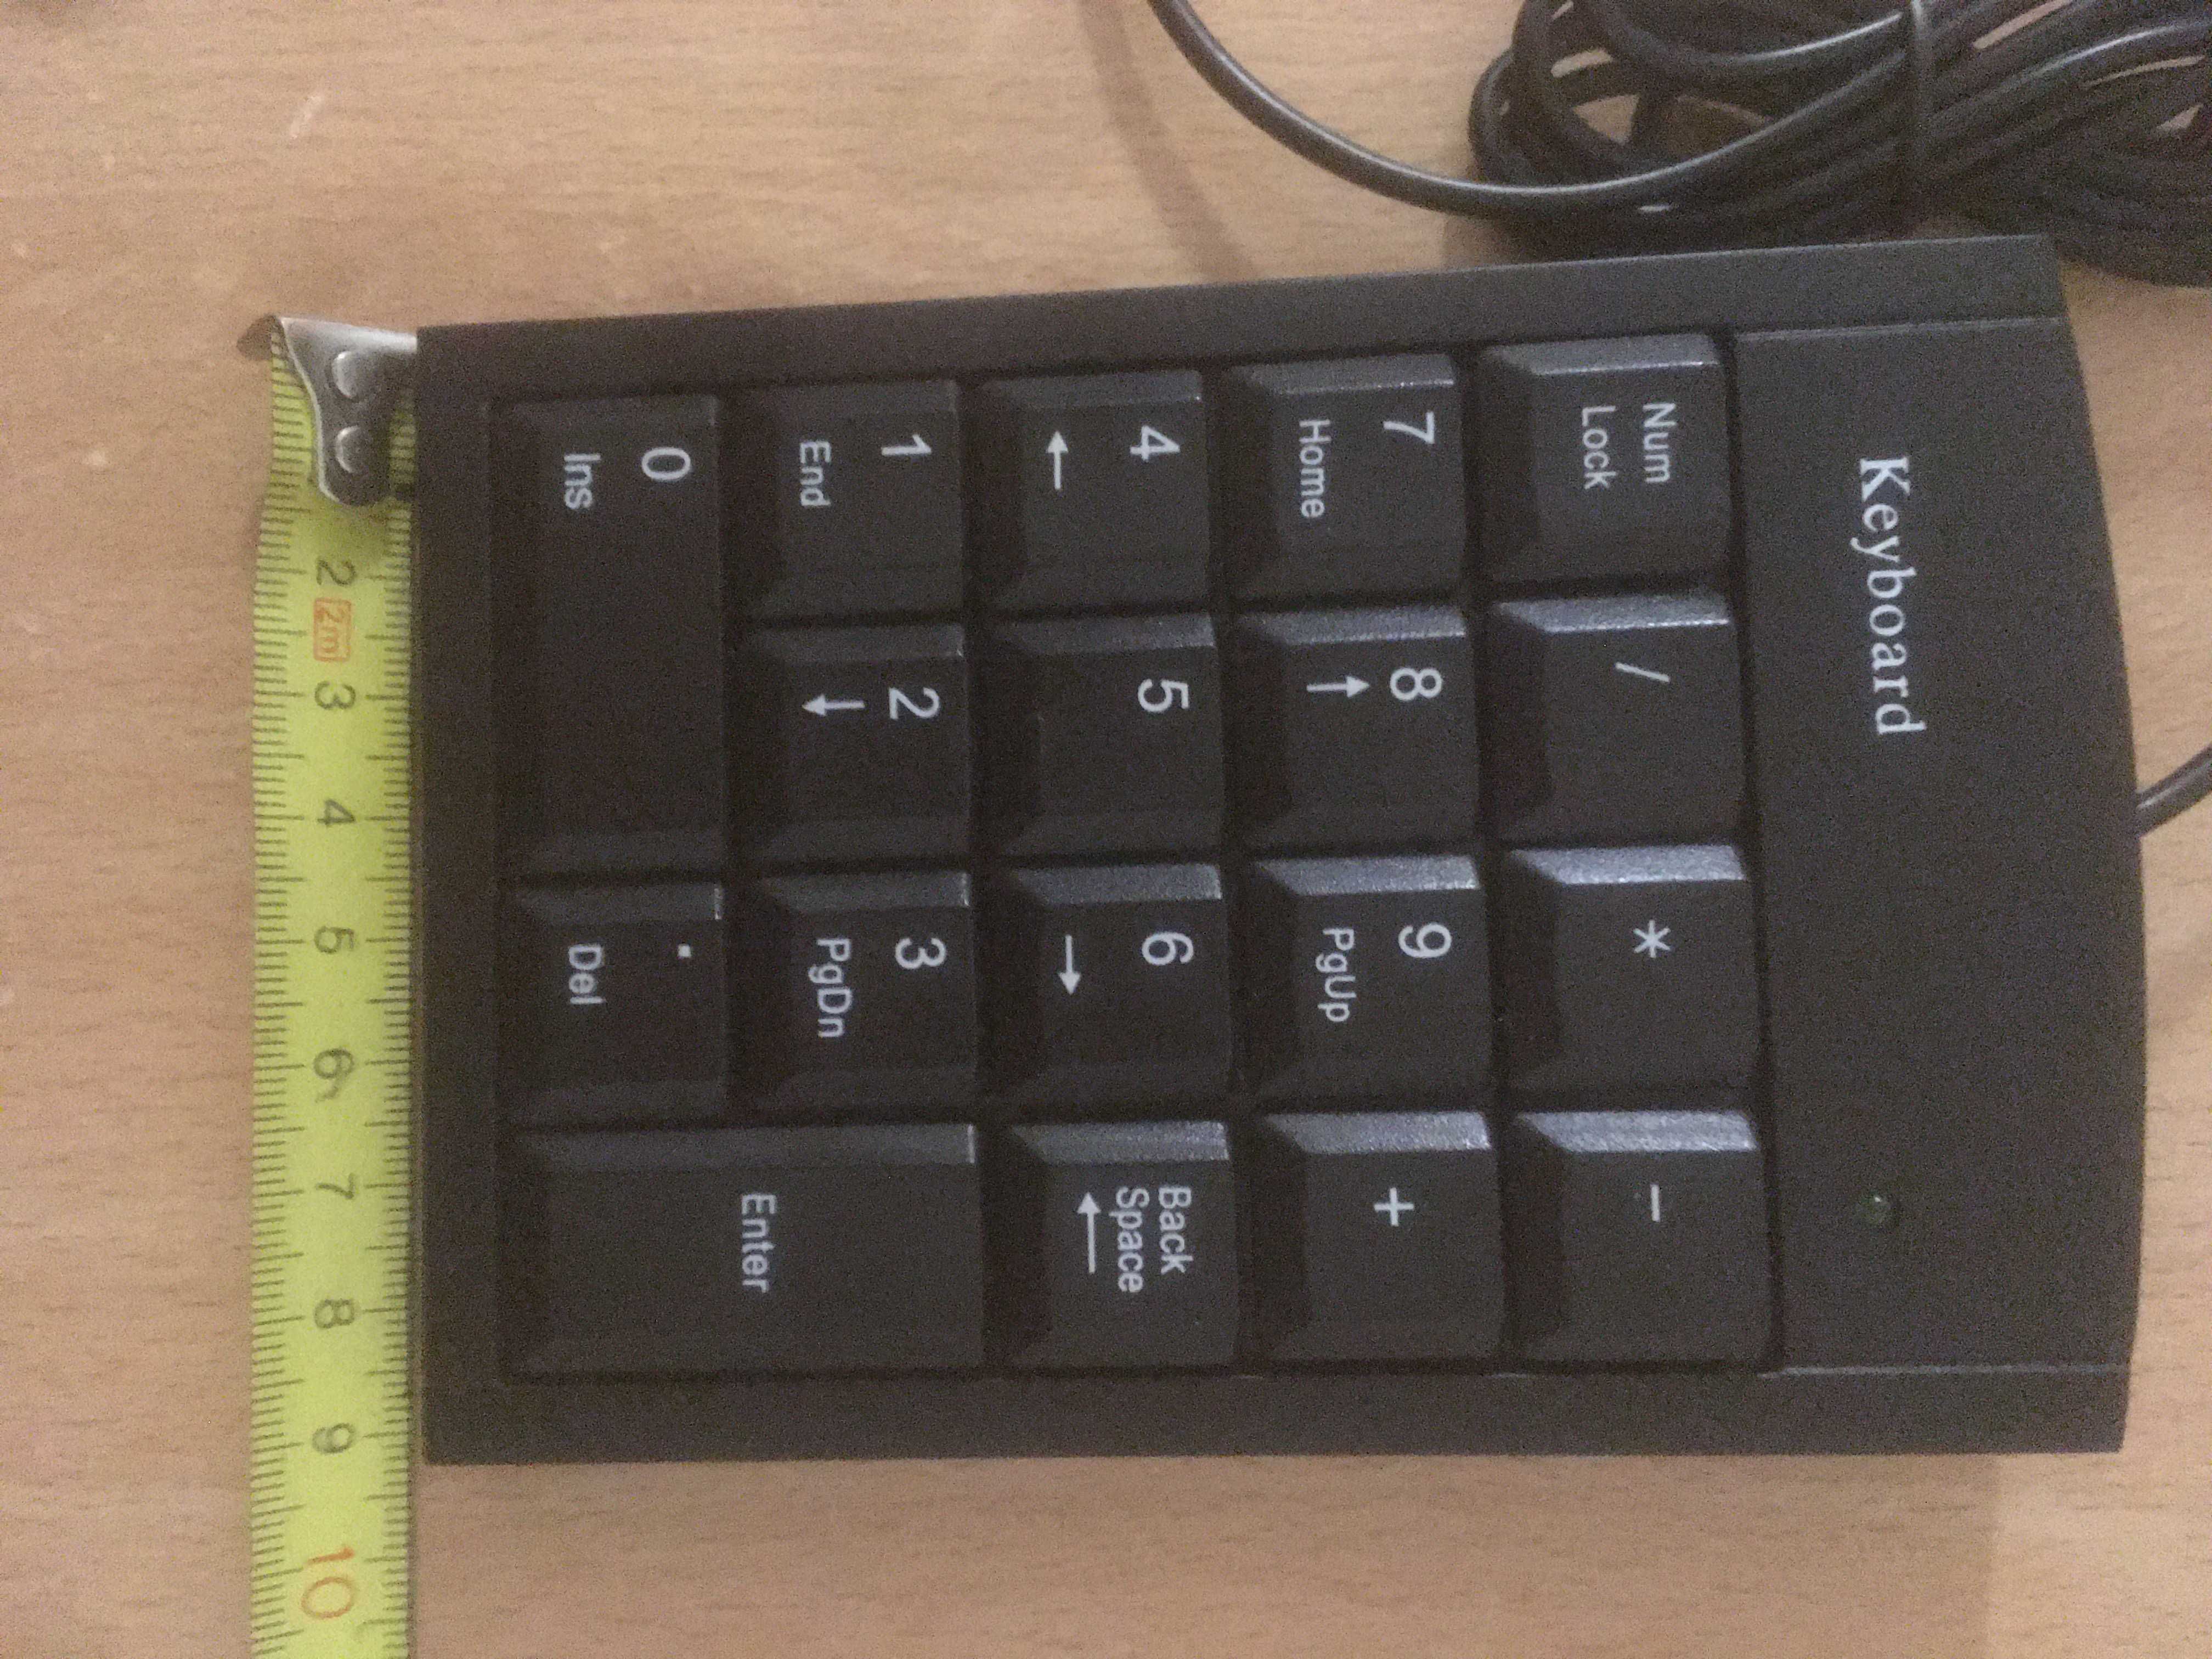 Keyboard 02980 klawiatura numeryczna zewnętrzna